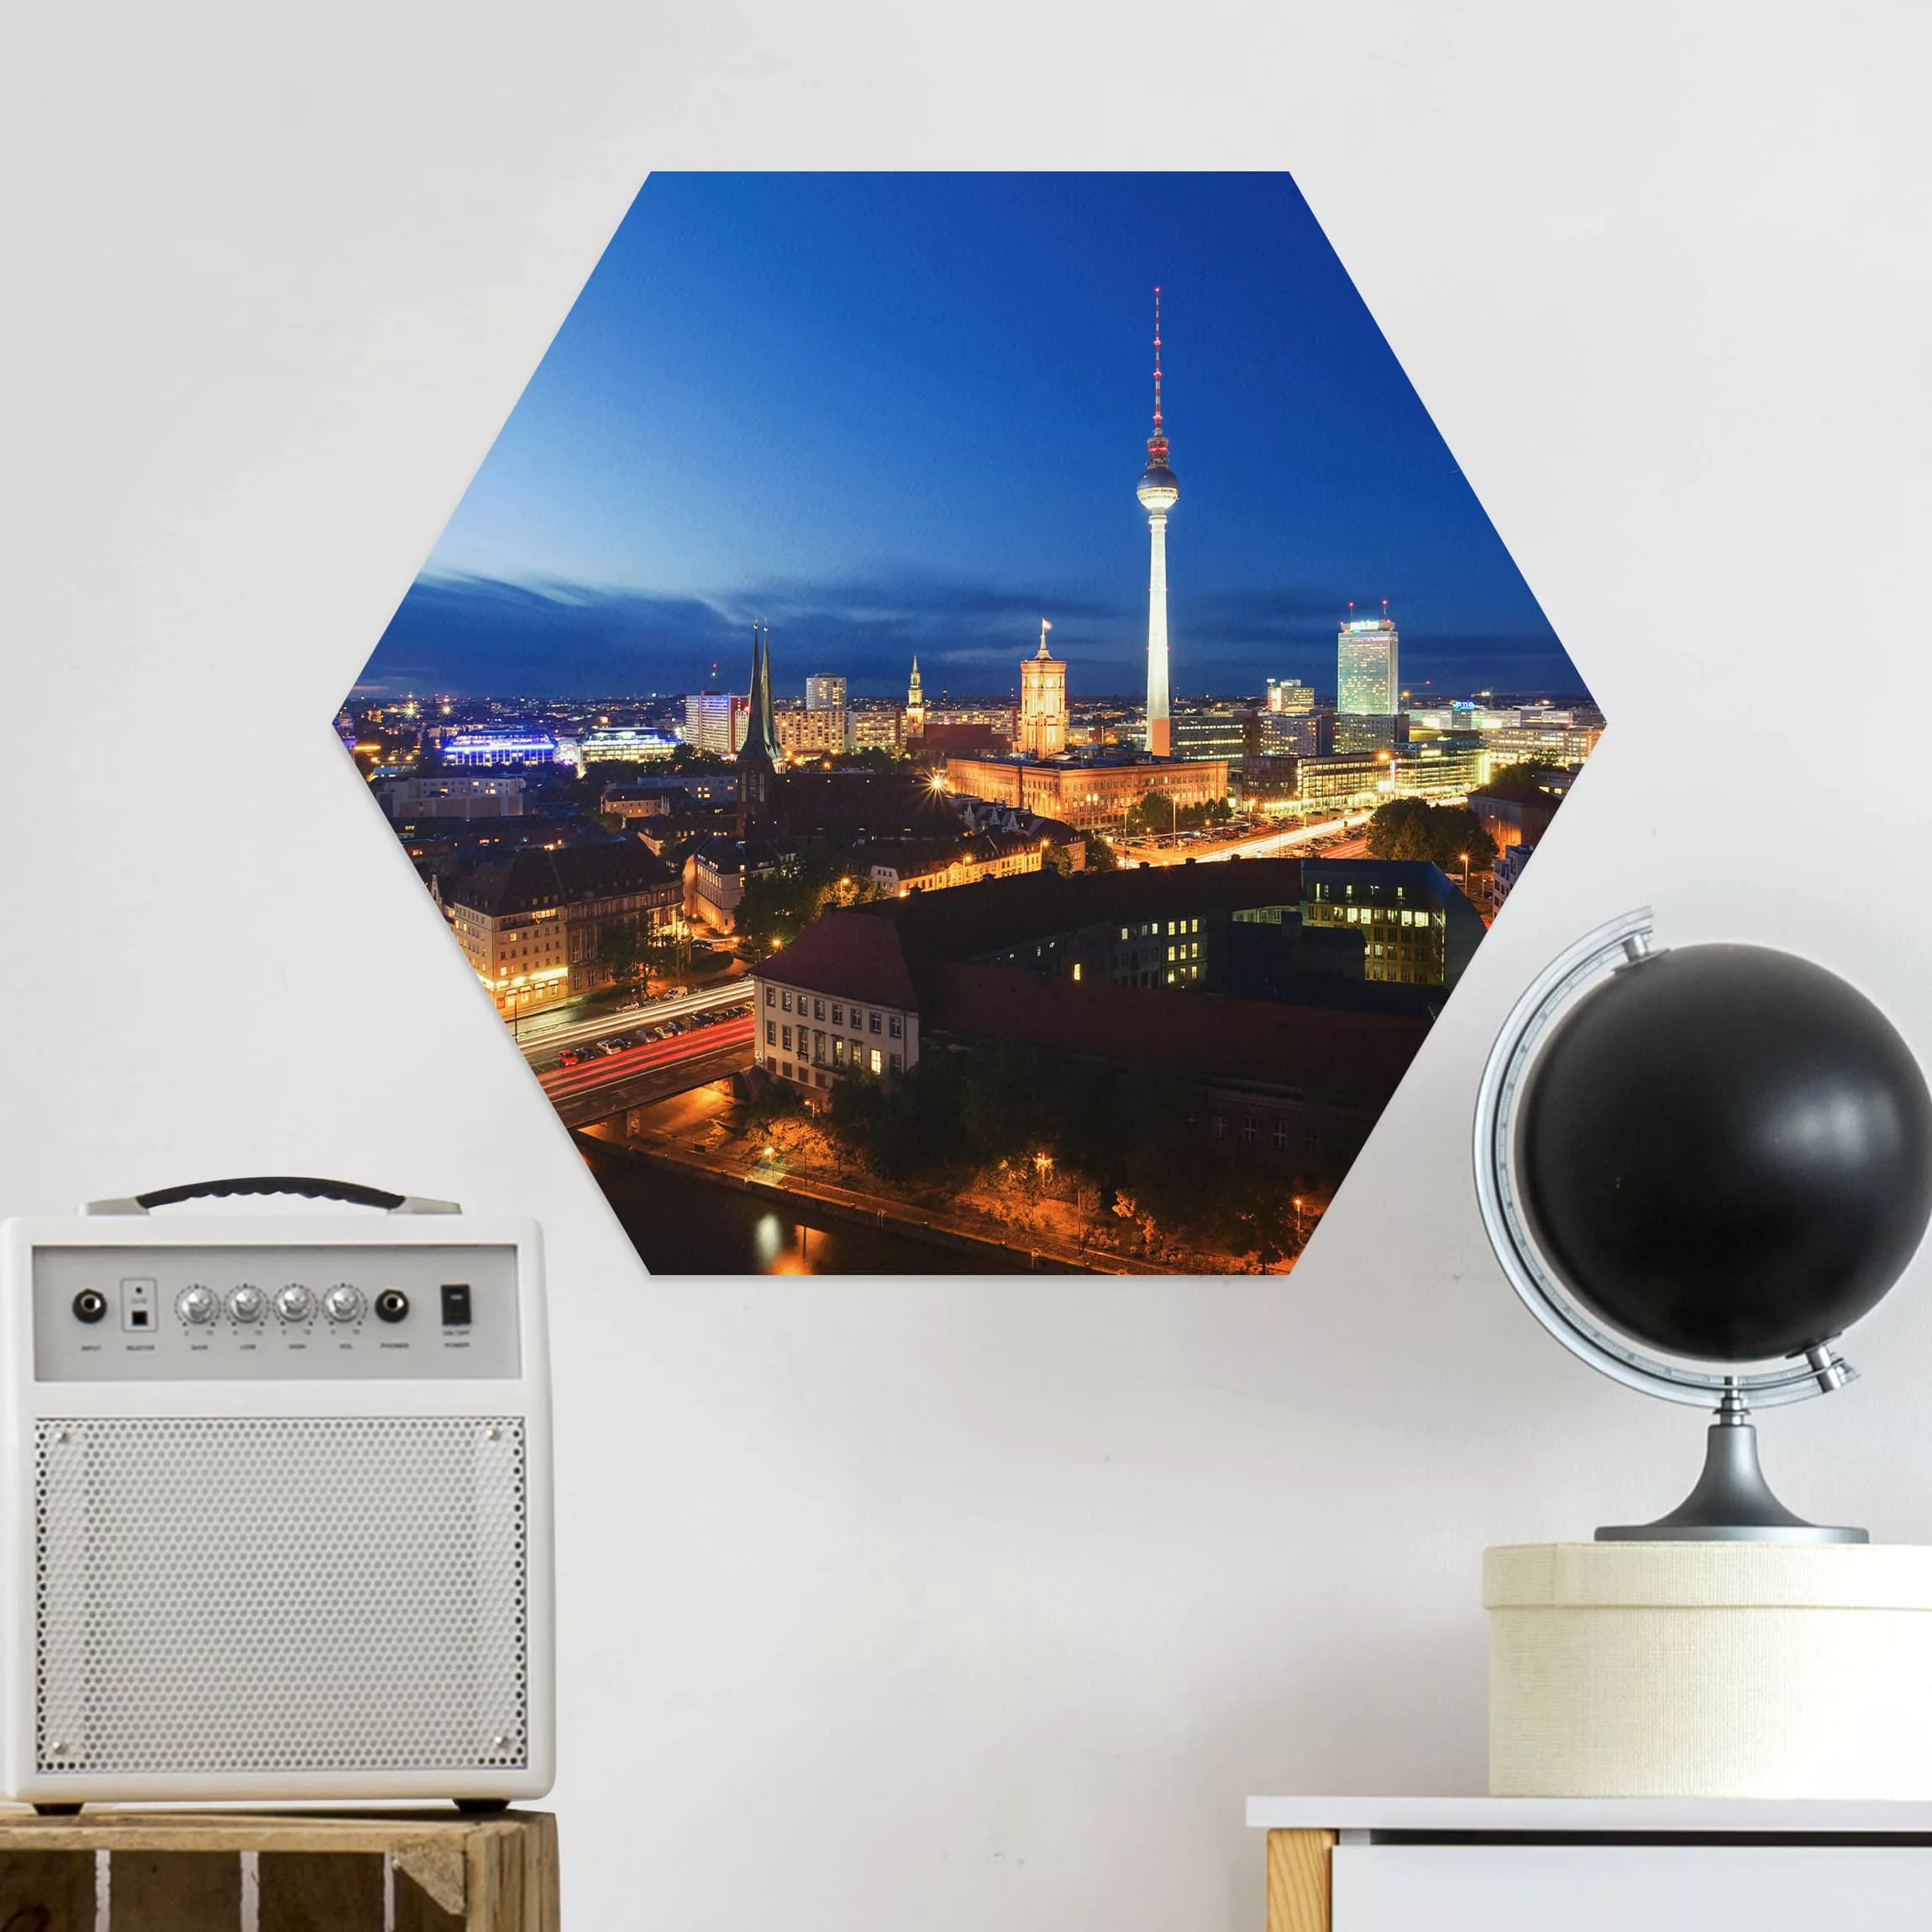 Hexagon-Alu-Dibond Bild Architektur & Skyline Fernsehturm bei Nacht günstig online kaufen